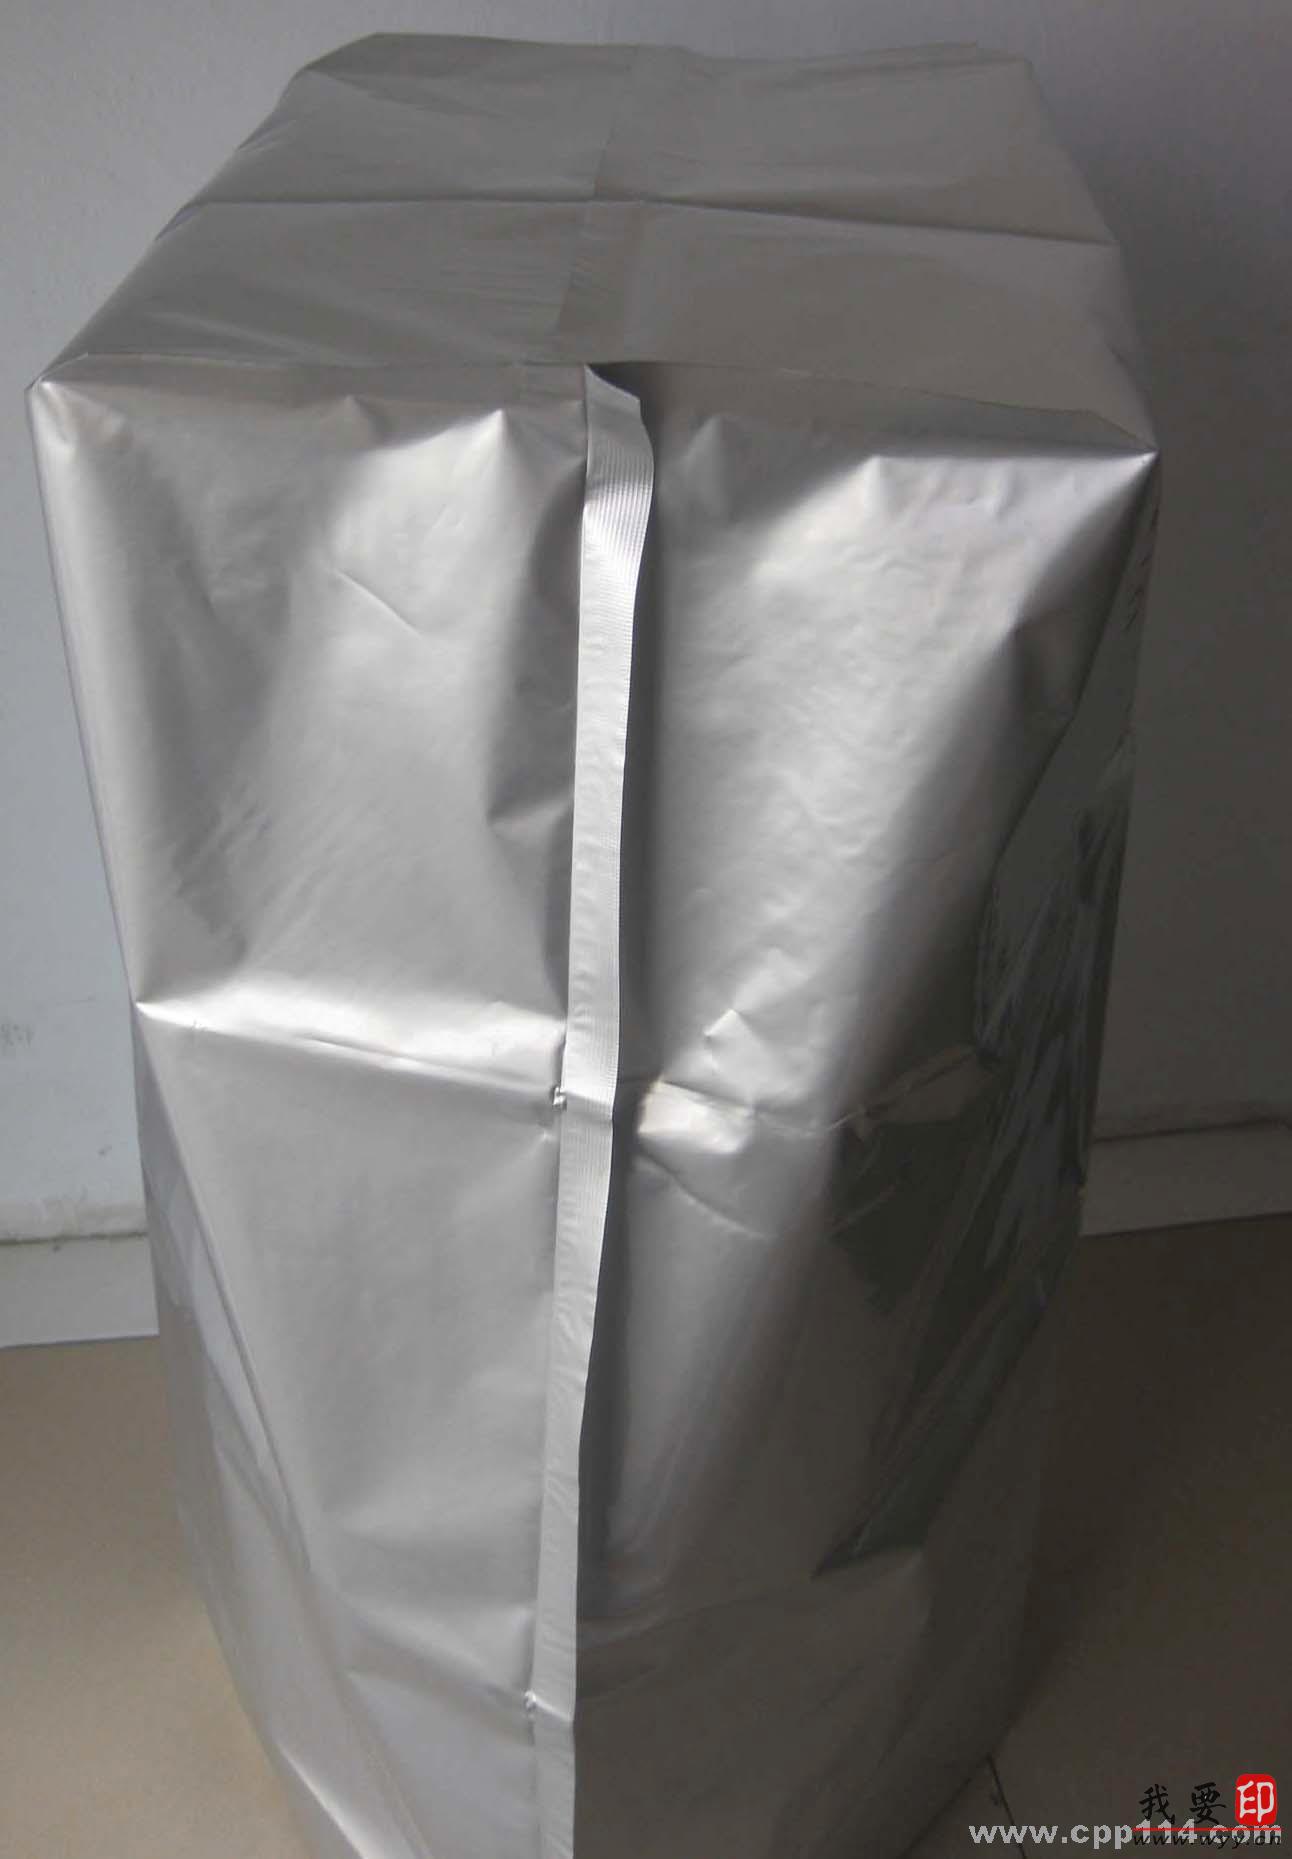 【供应】铝箔方底袋 方底铝箔袋 包装袋